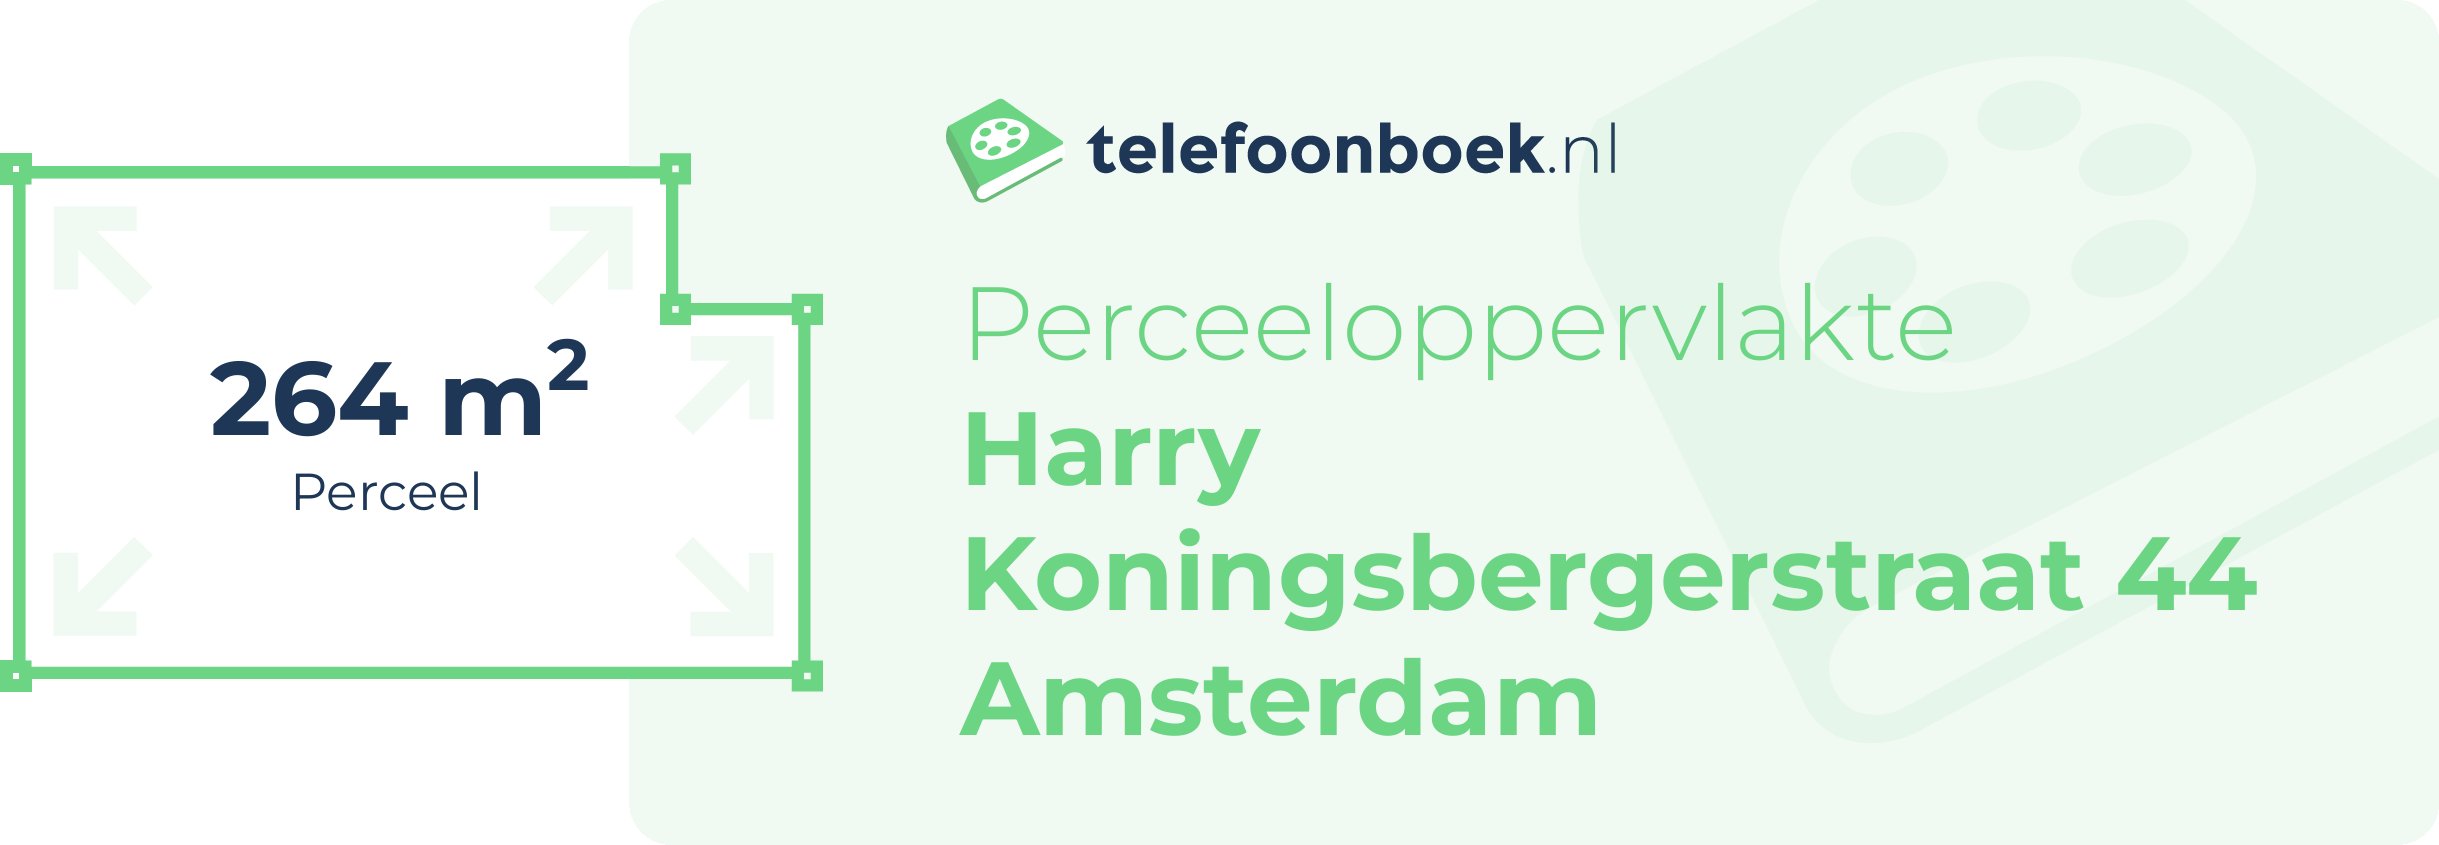 Perceeloppervlakte Harry Koningsbergerstraat 44 Amsterdam